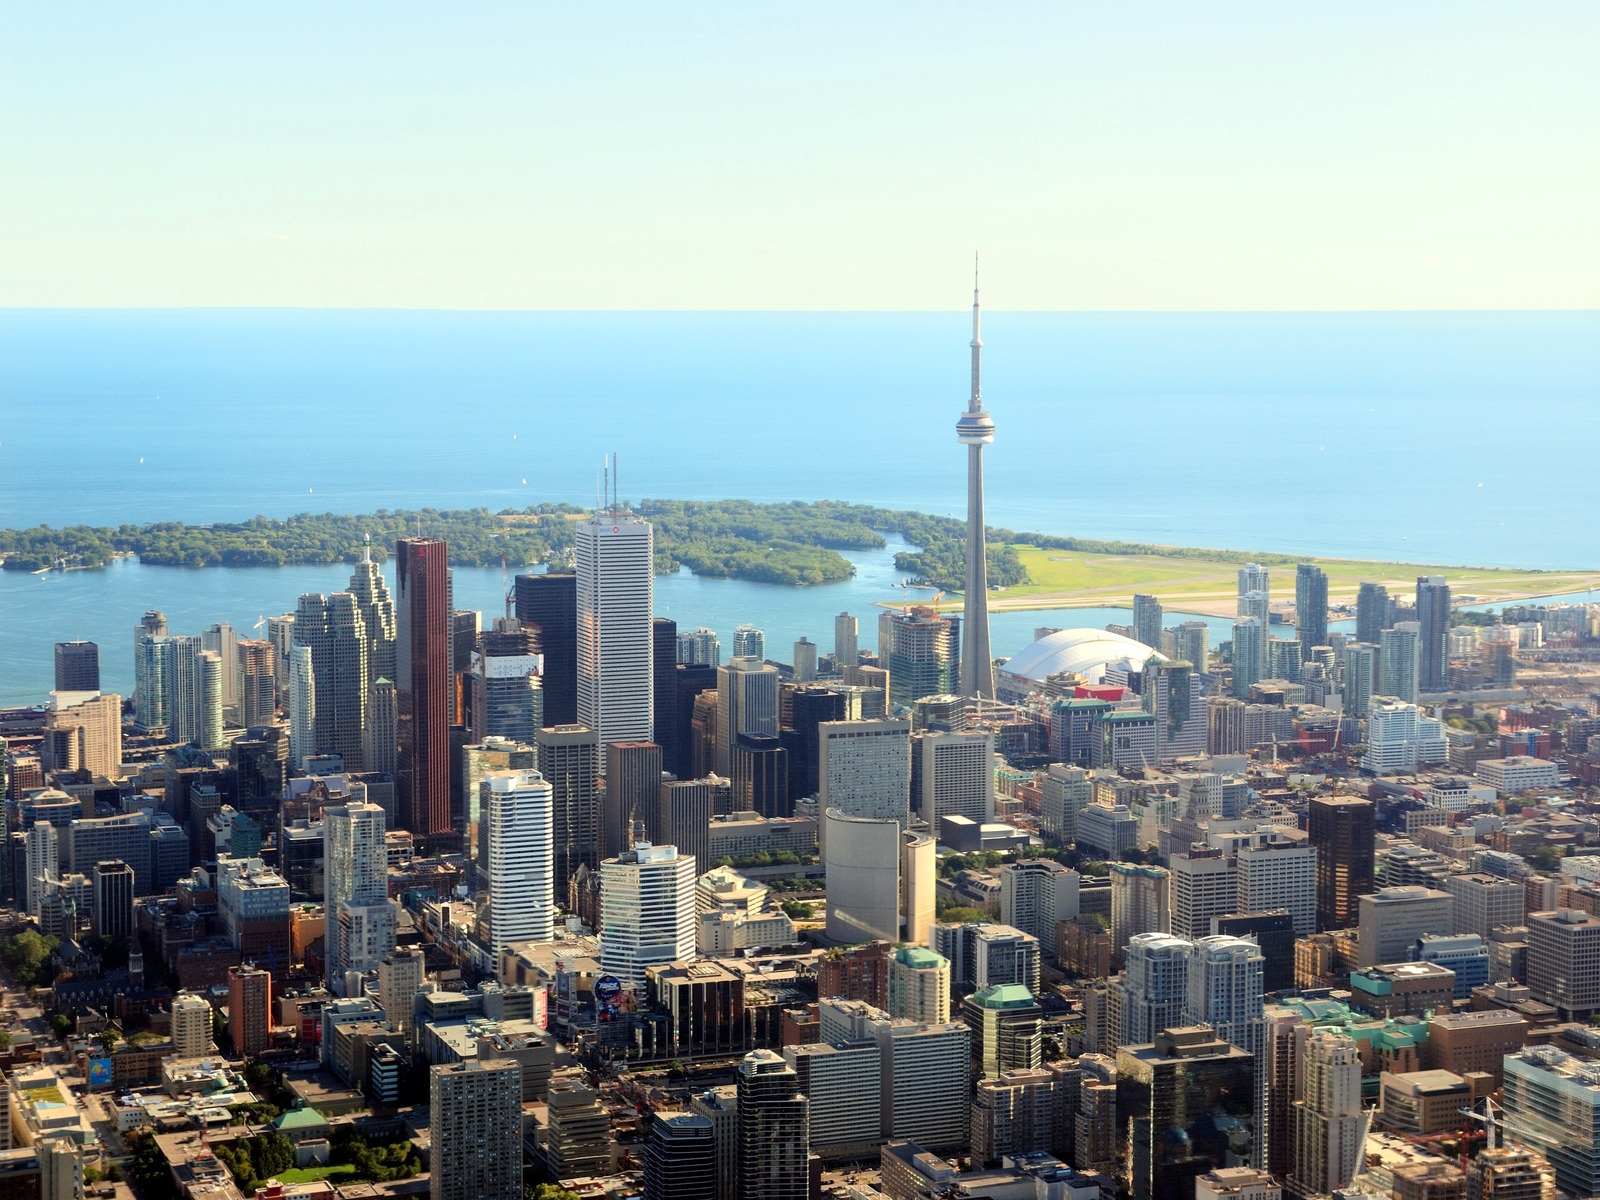 Toronto Canada for 1600 x 1200 resolution